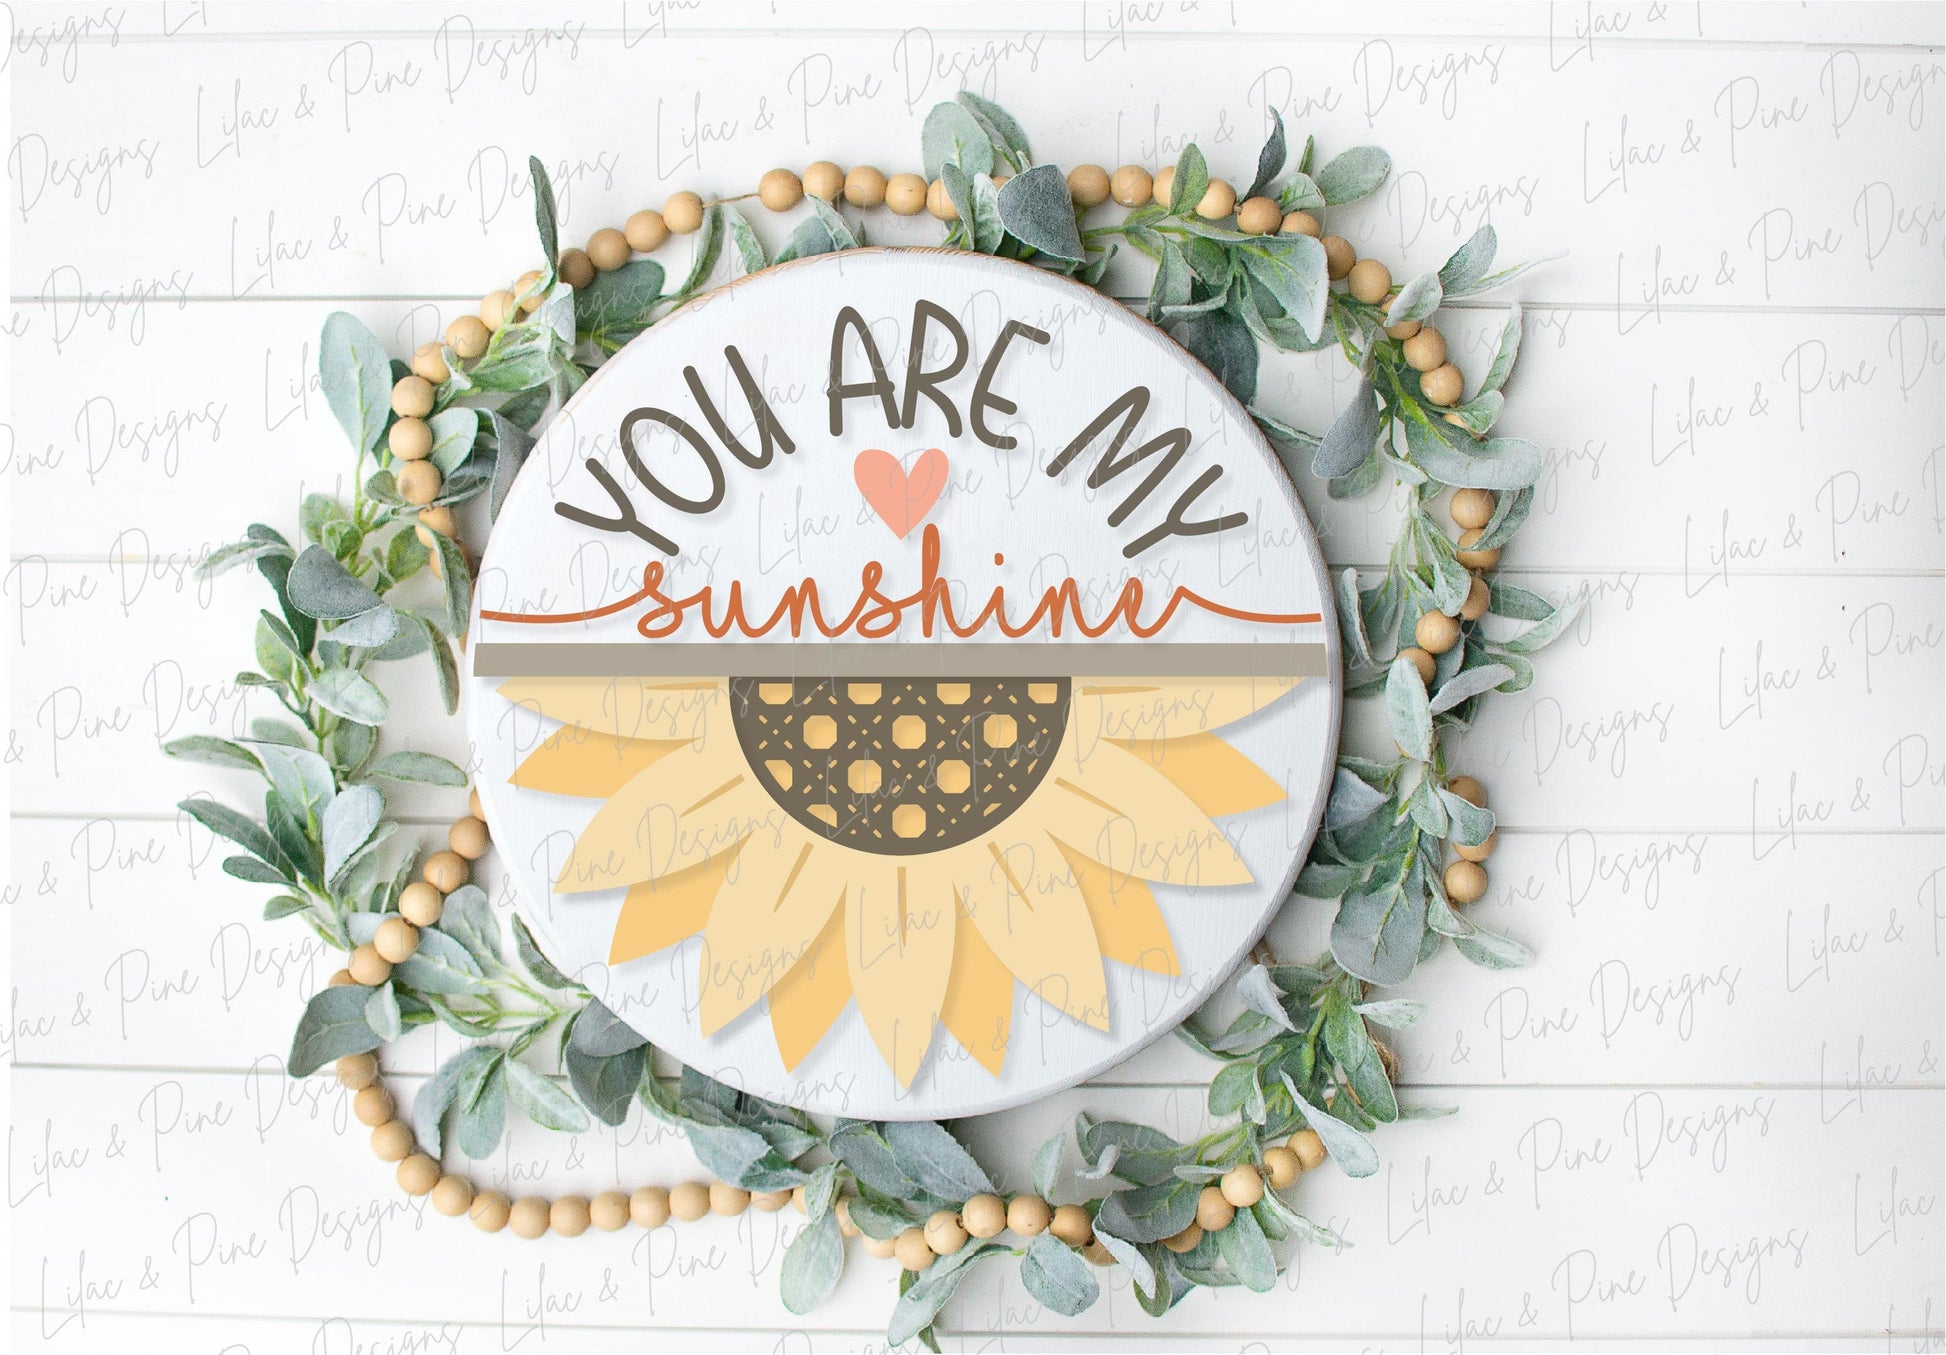 You are my sunshine SVG, Sunflower sign svg, door hanger svg, Summer decor SVG, fall svg, round wood sign, Glowforge SVG, laser cut file